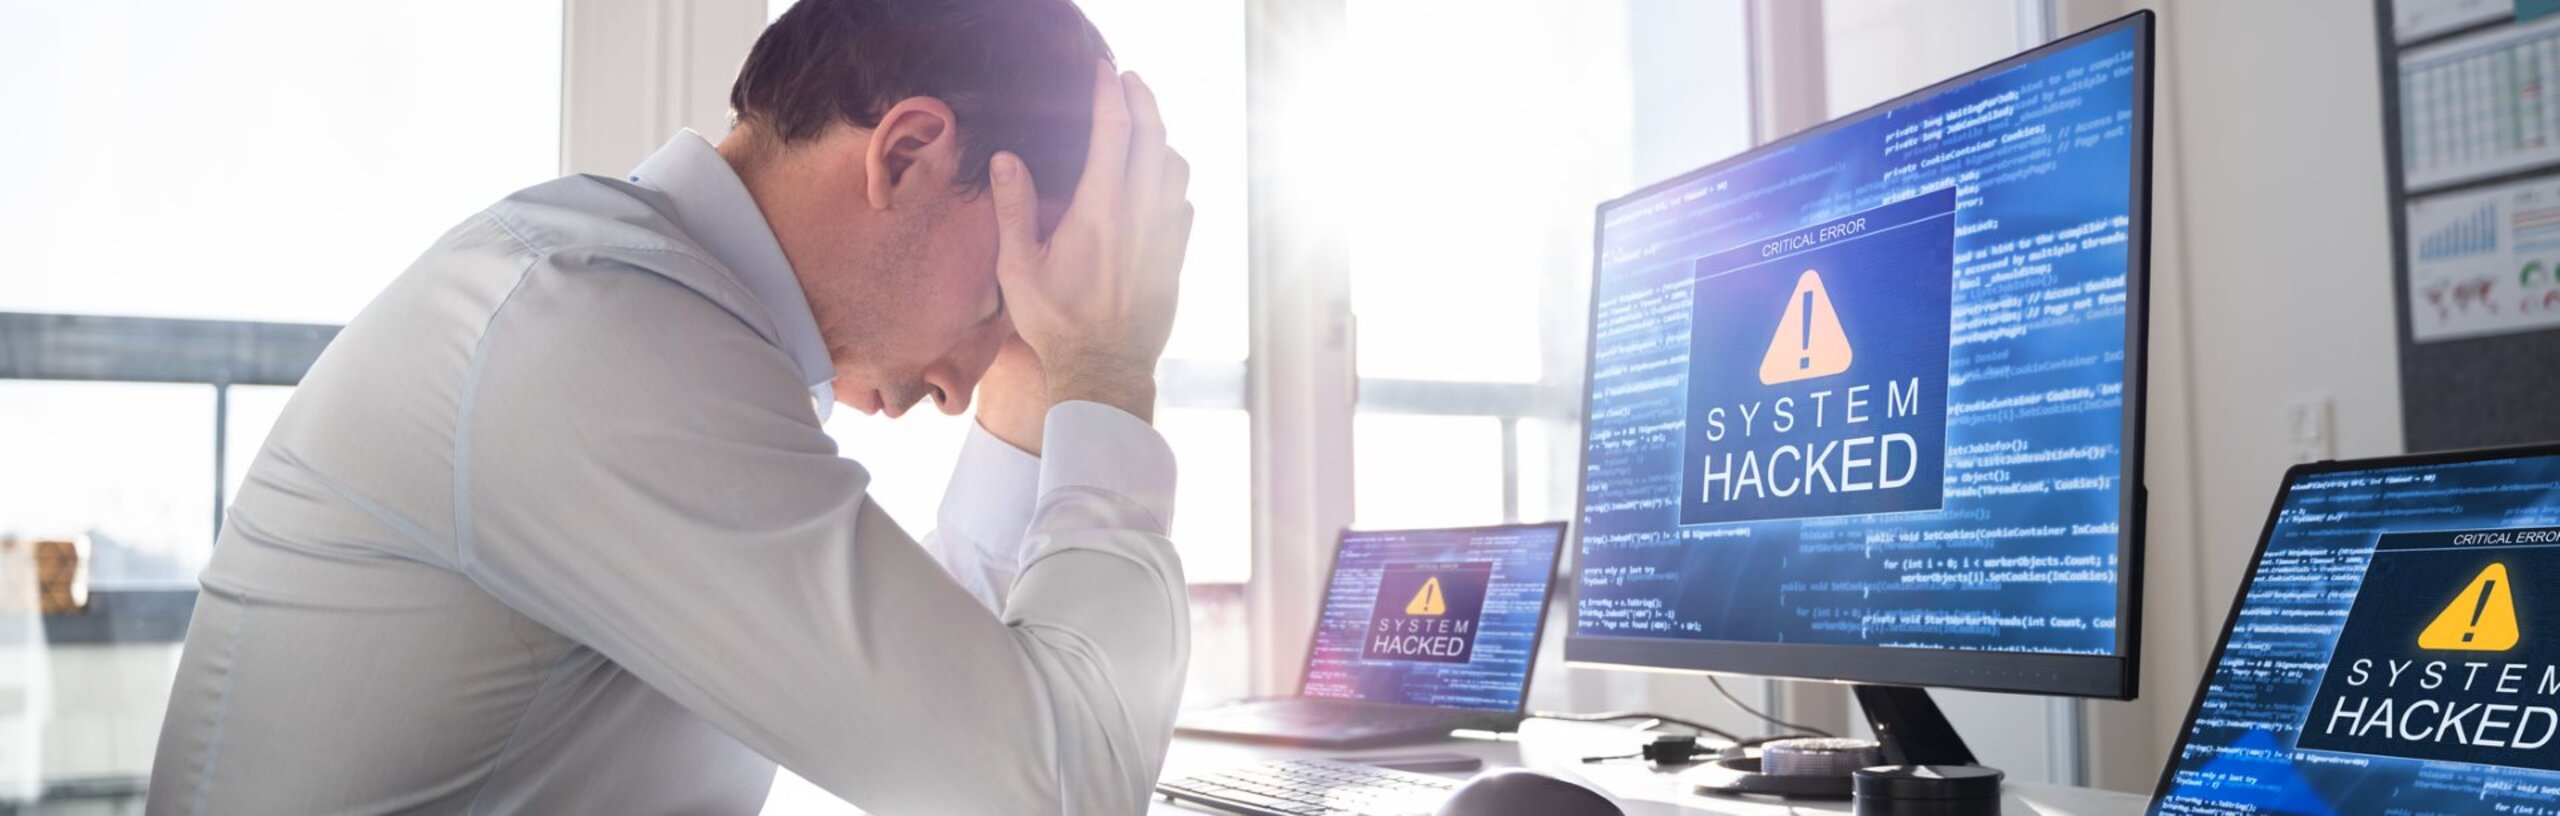 Ein Mann im weißen Hemd schlägt vor dem Rechner, der nach einer Cyberattacke gesperrt wurde, die Hände über dem Kopf zusammen.